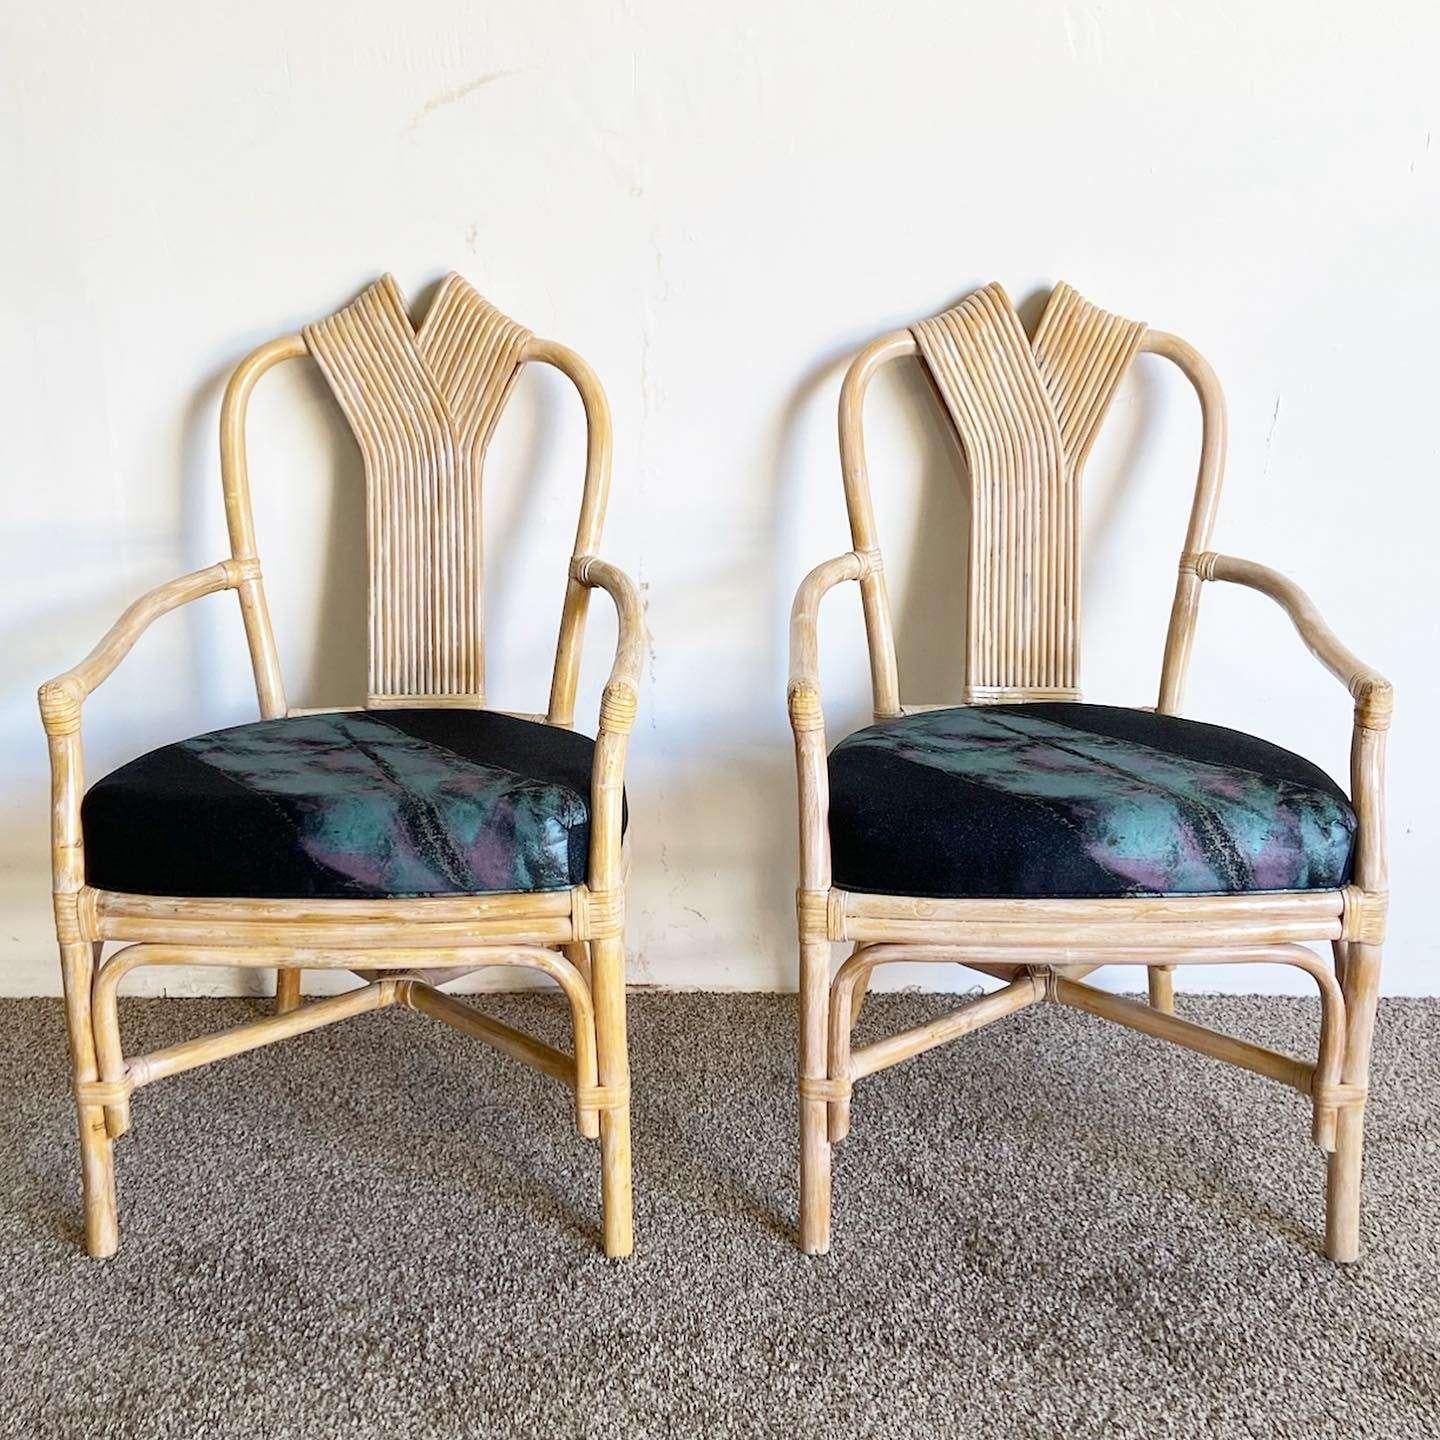 Erstaunlich Satz von 6 Vintage böhmischen Bambus Rattan Esszimmer Stühle. Sie sind jeweils mit einer gewaschenen Oberfläche und einer Rückenlehne aus Schilfband versehen. Die Kissen sind schwarz und mit einem postmodernen rosa und blauen Stoff im